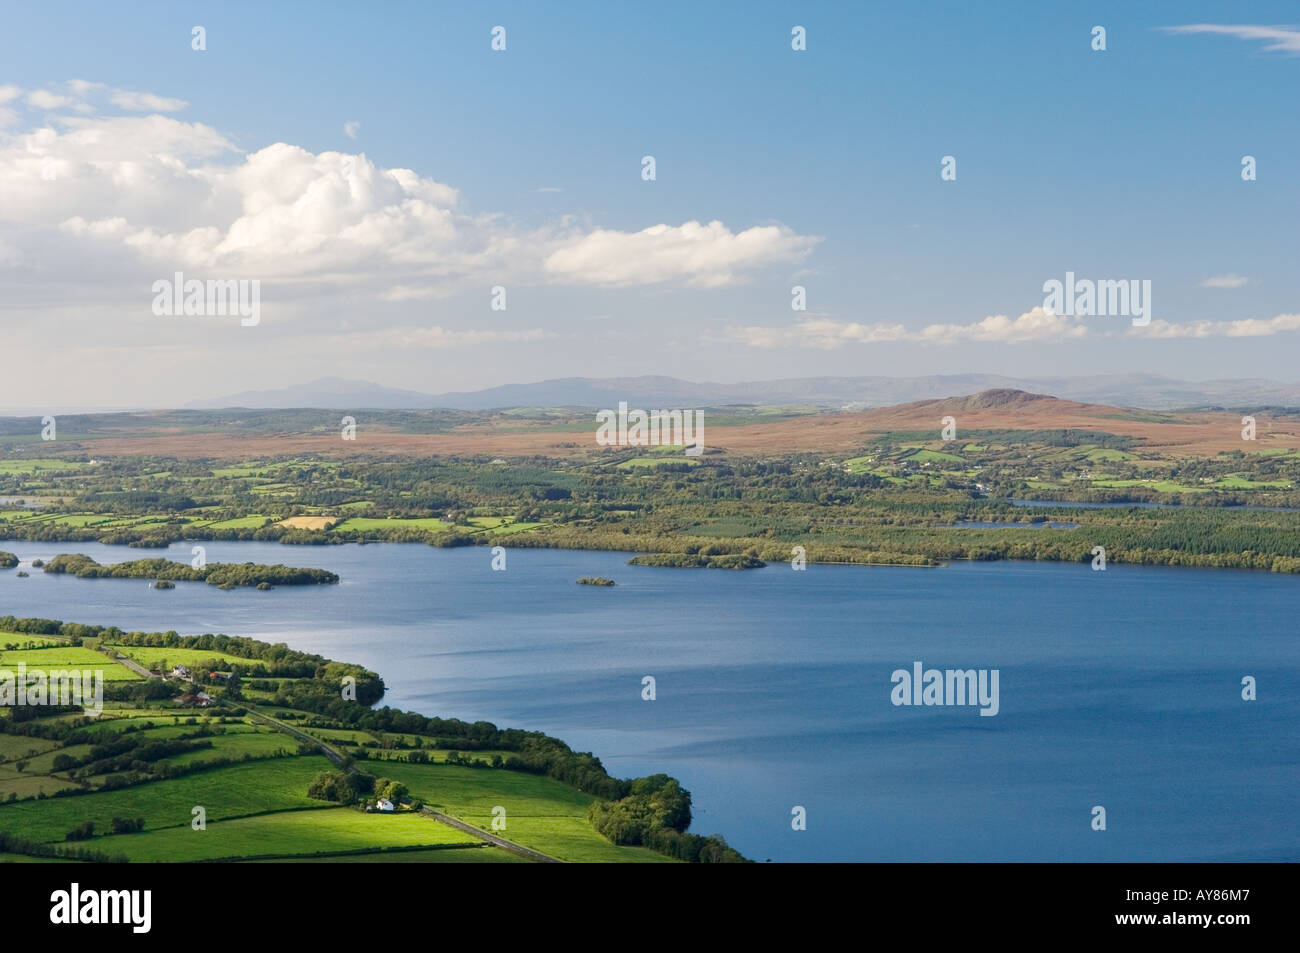 Westen über unteren Lough Erne von Klippen von Magho County Fermanagh in der Nähe von Beleek Enniskillen in Richtung Donegal Bay. Irland. Stockfoto